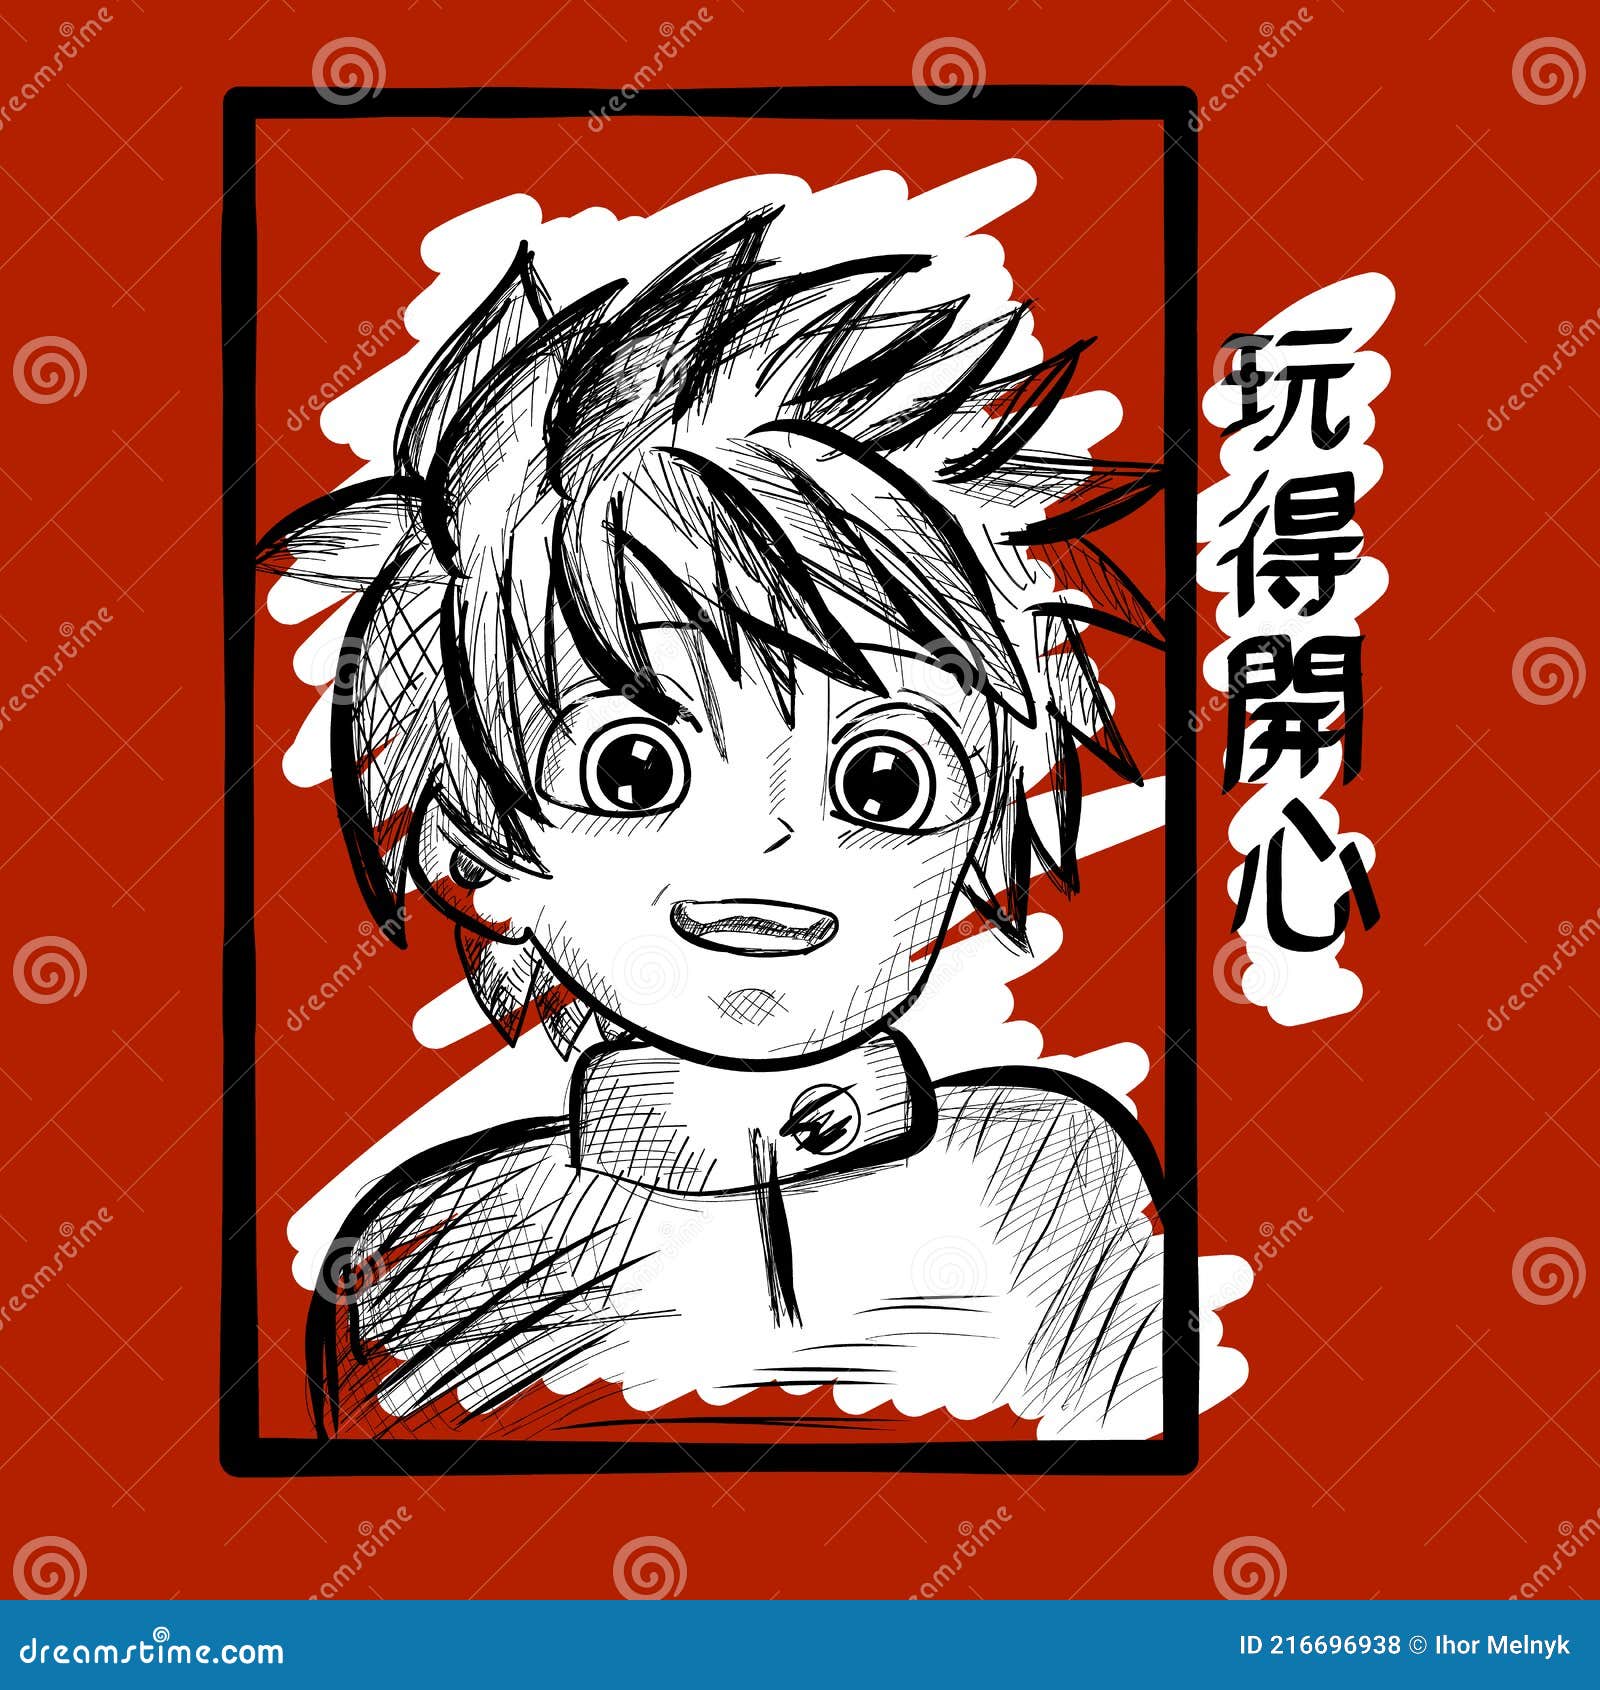 Jovem desenho de ilustração vetorial de personagem de estilo anime manga  anime boy